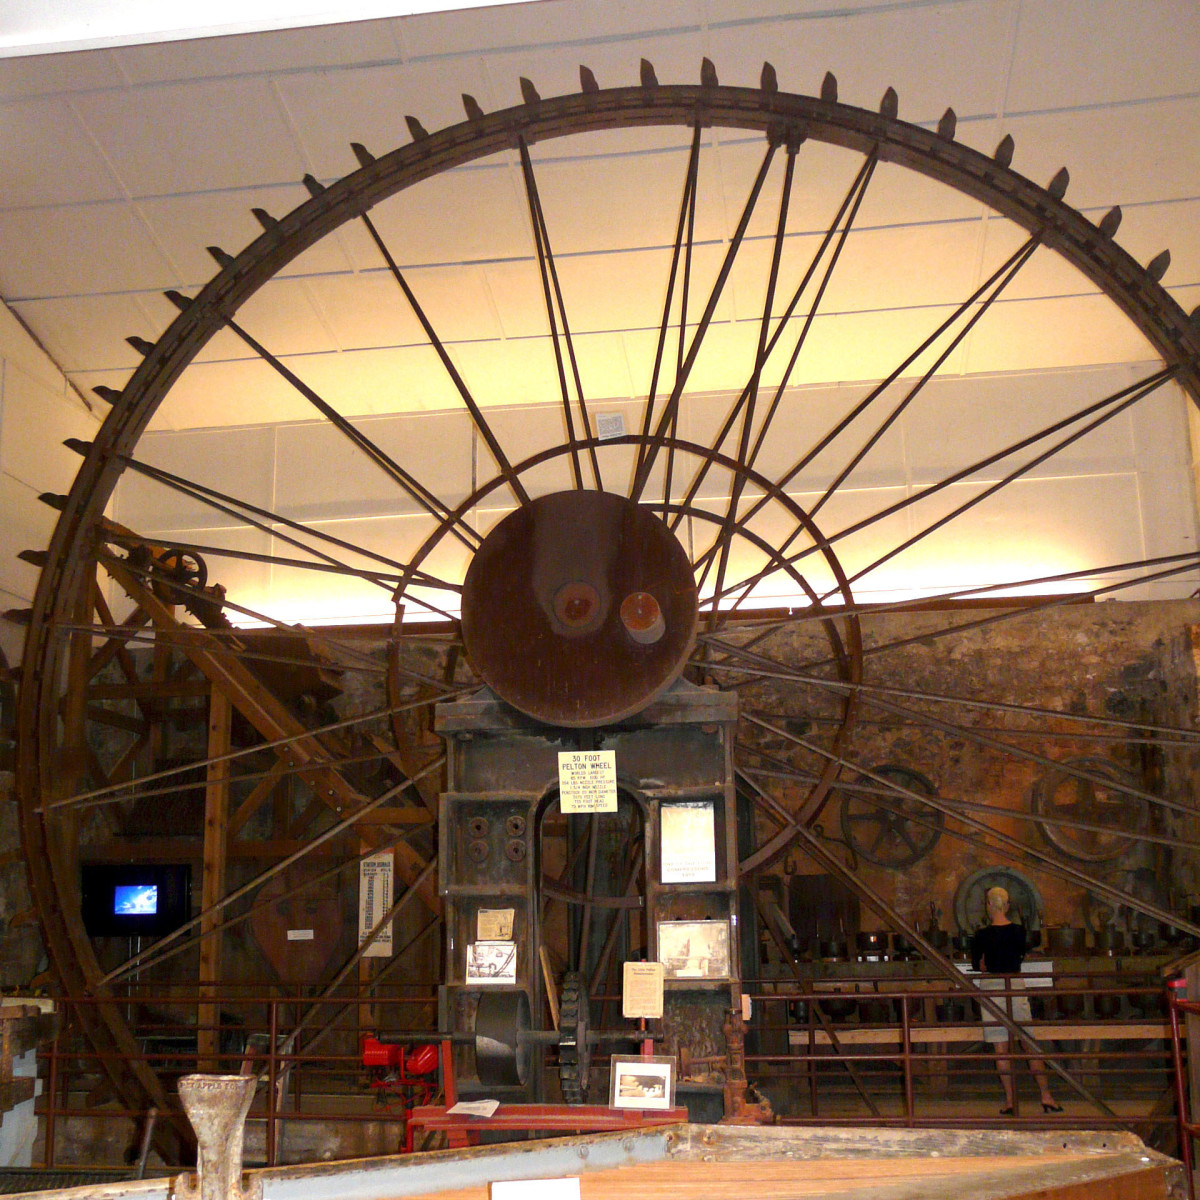 Largest Pelton wheel in the world: 30 feet in diameter